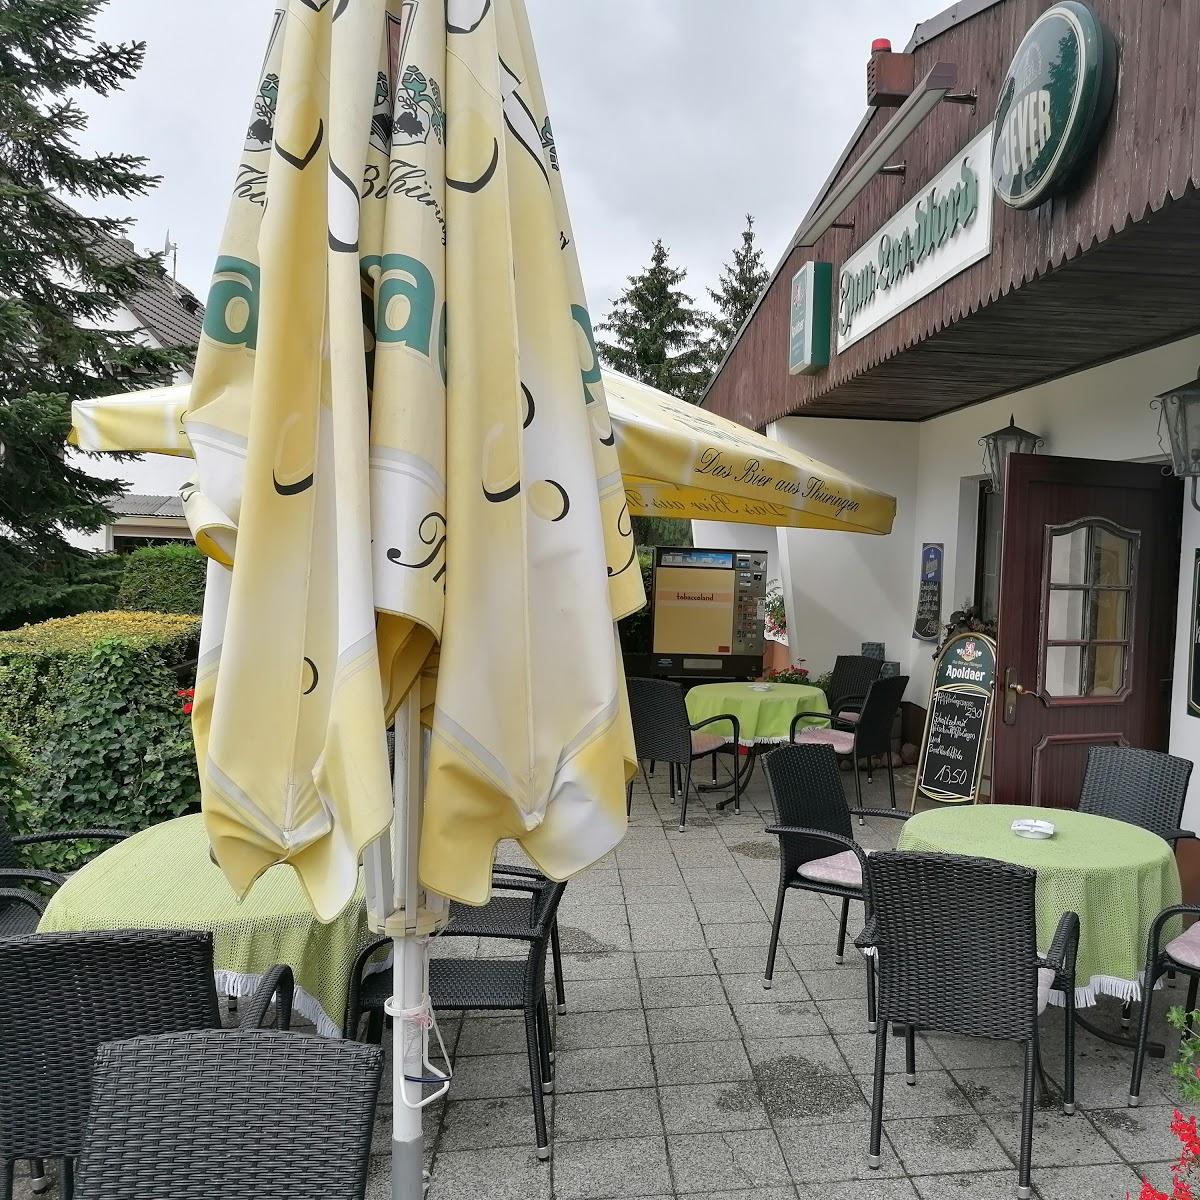 Restaurant "Zum Landlord Schank- u. Speisenwirtschaft u. Eiscafe" in  Lehnin